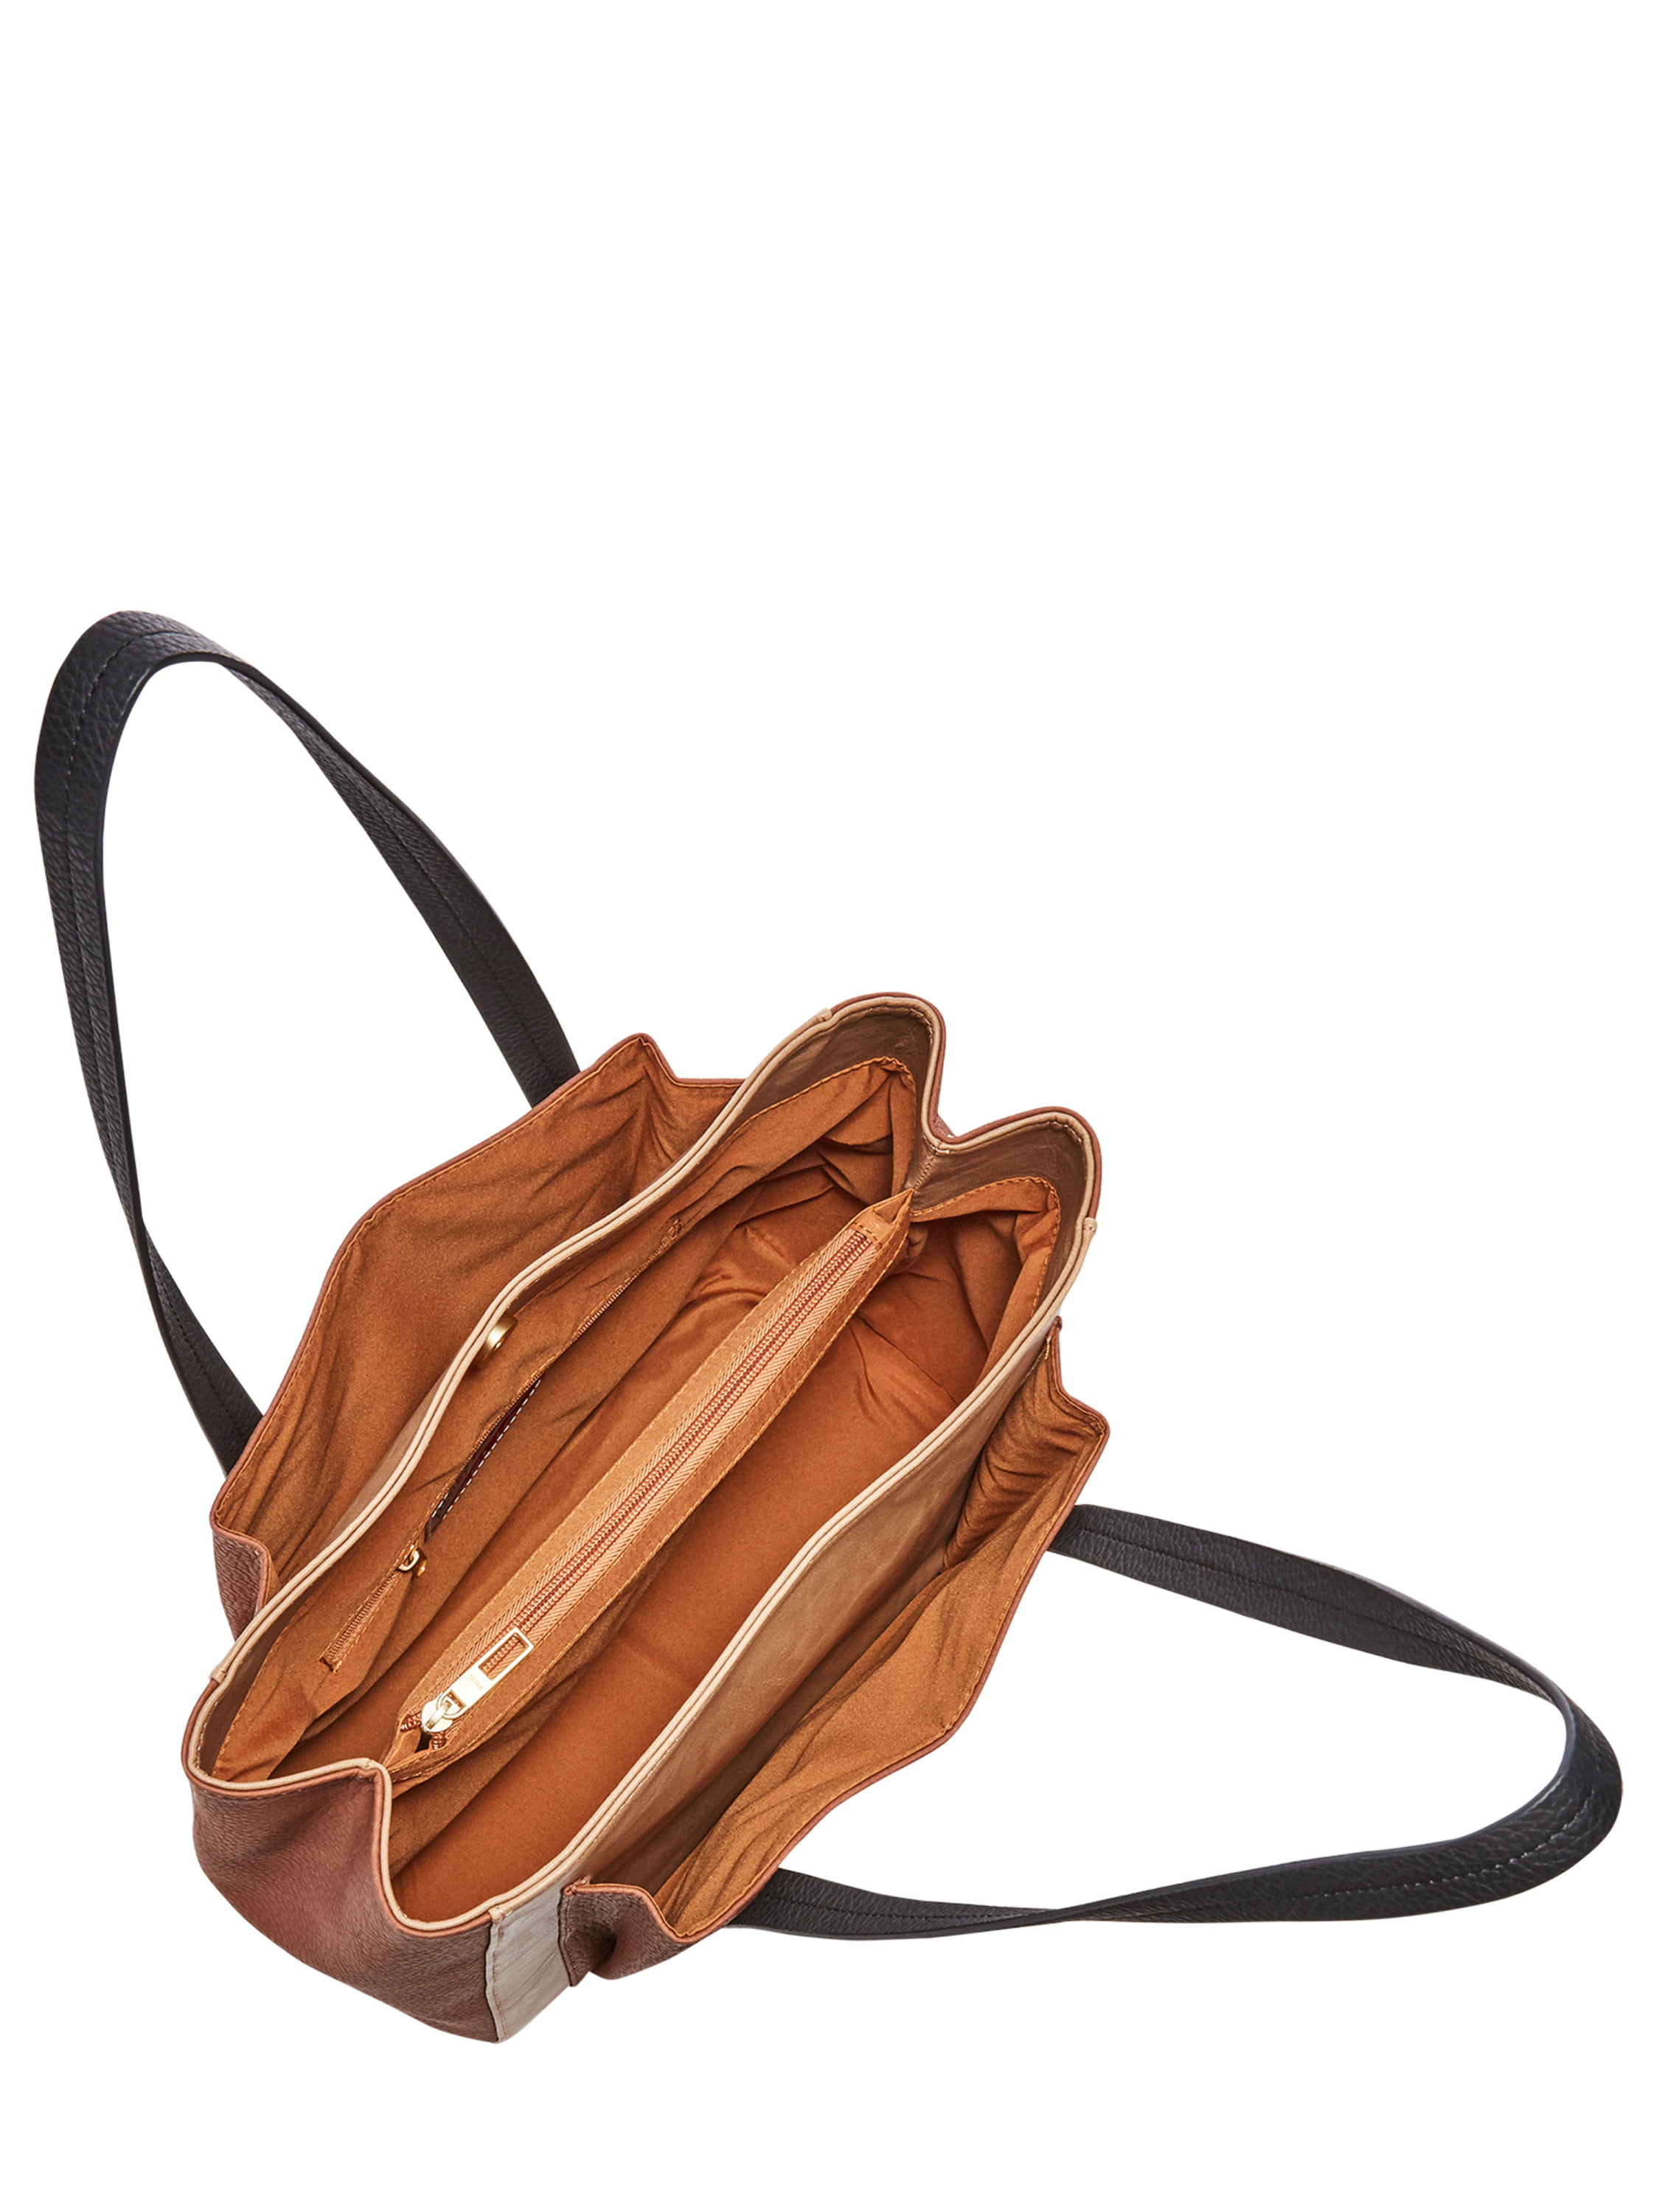 Beautiful Y2K Relic Wooden Handle Handbag- y2k bag - handbag